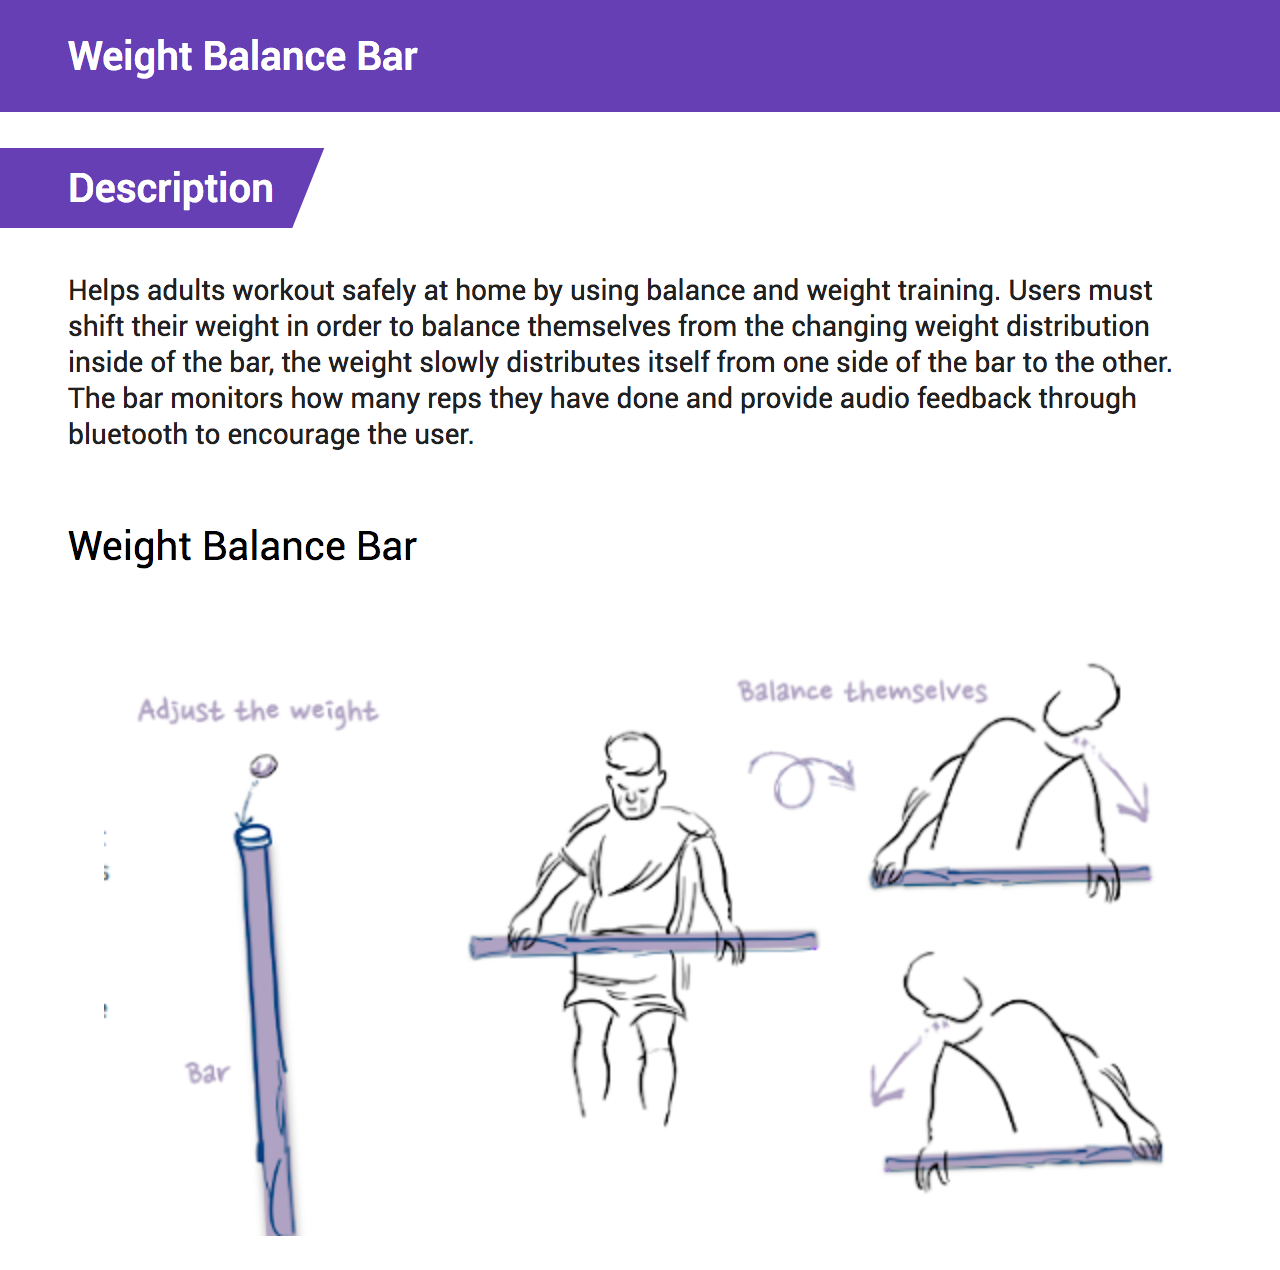 Weight Balance Bar